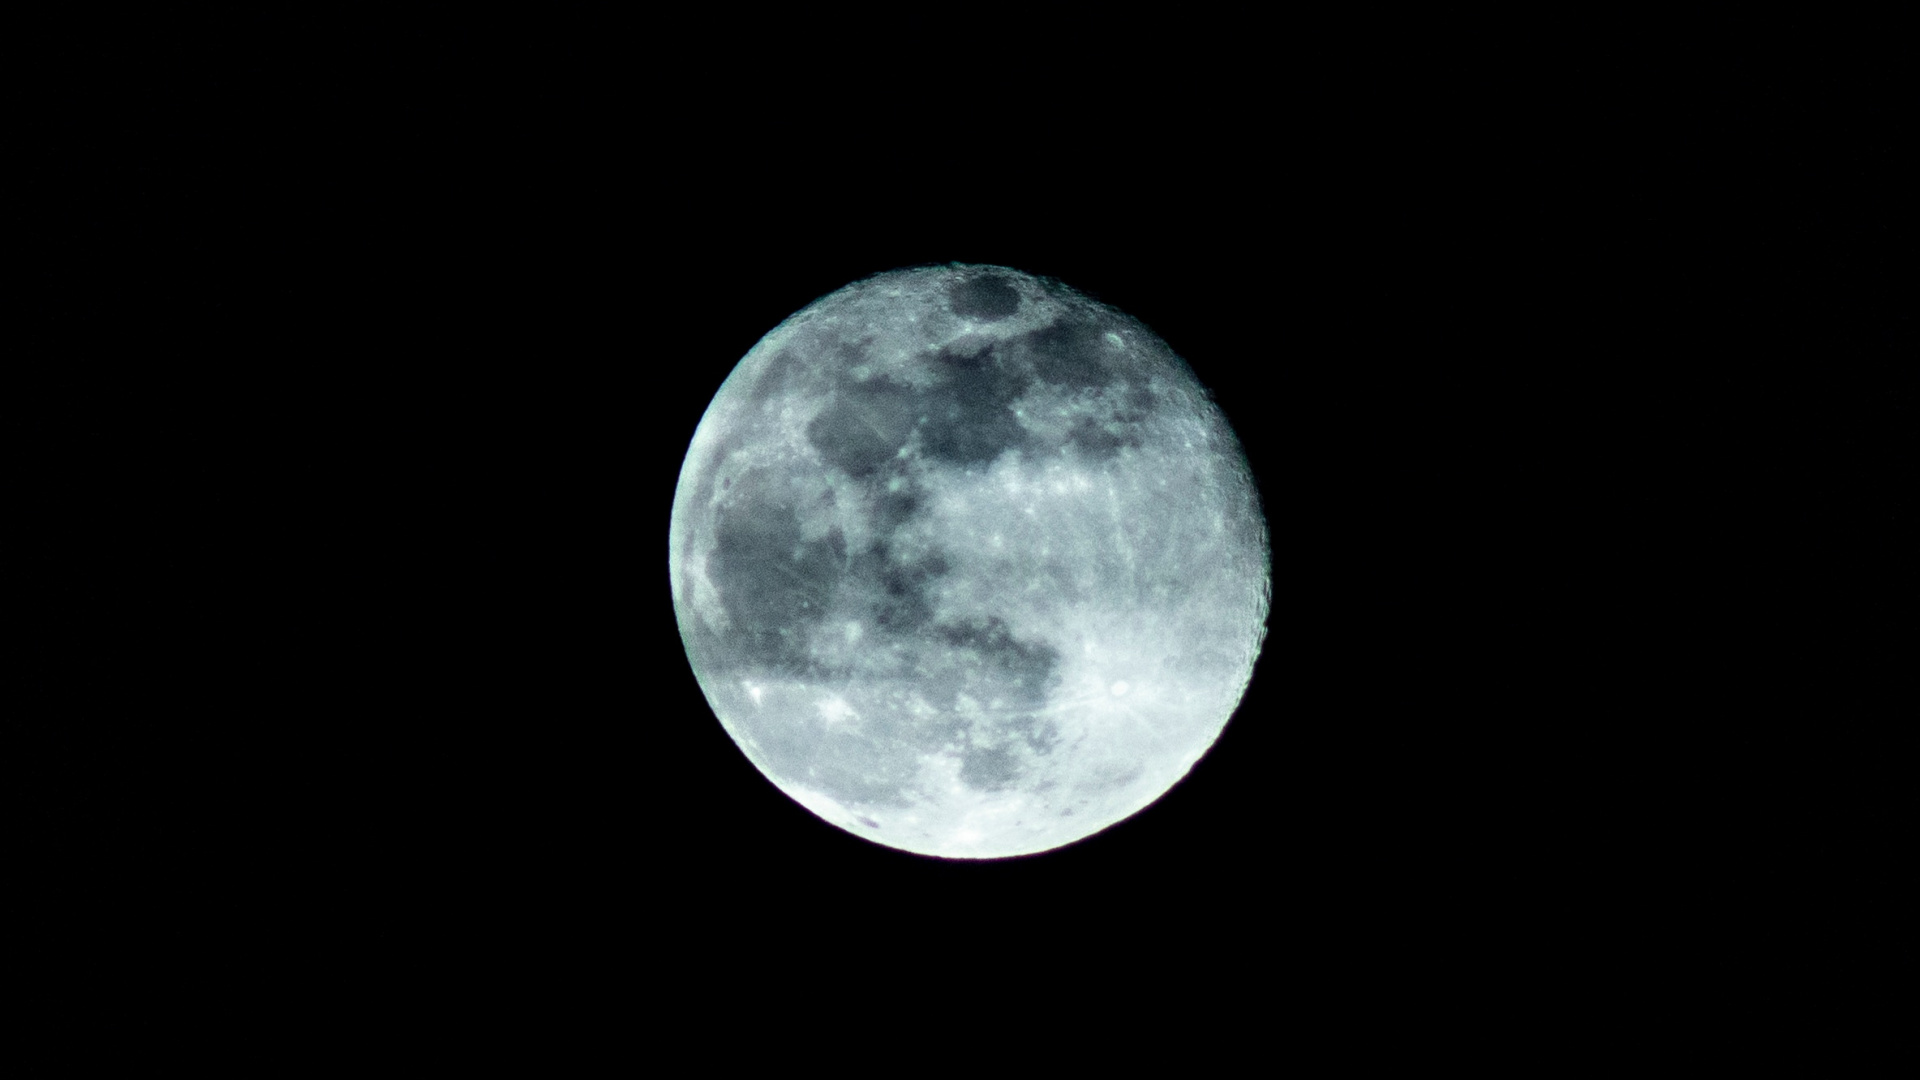 满月, 月亮, 月光, 蓝色的月亮, 天文学对象 壁纸 1920x1080 允许